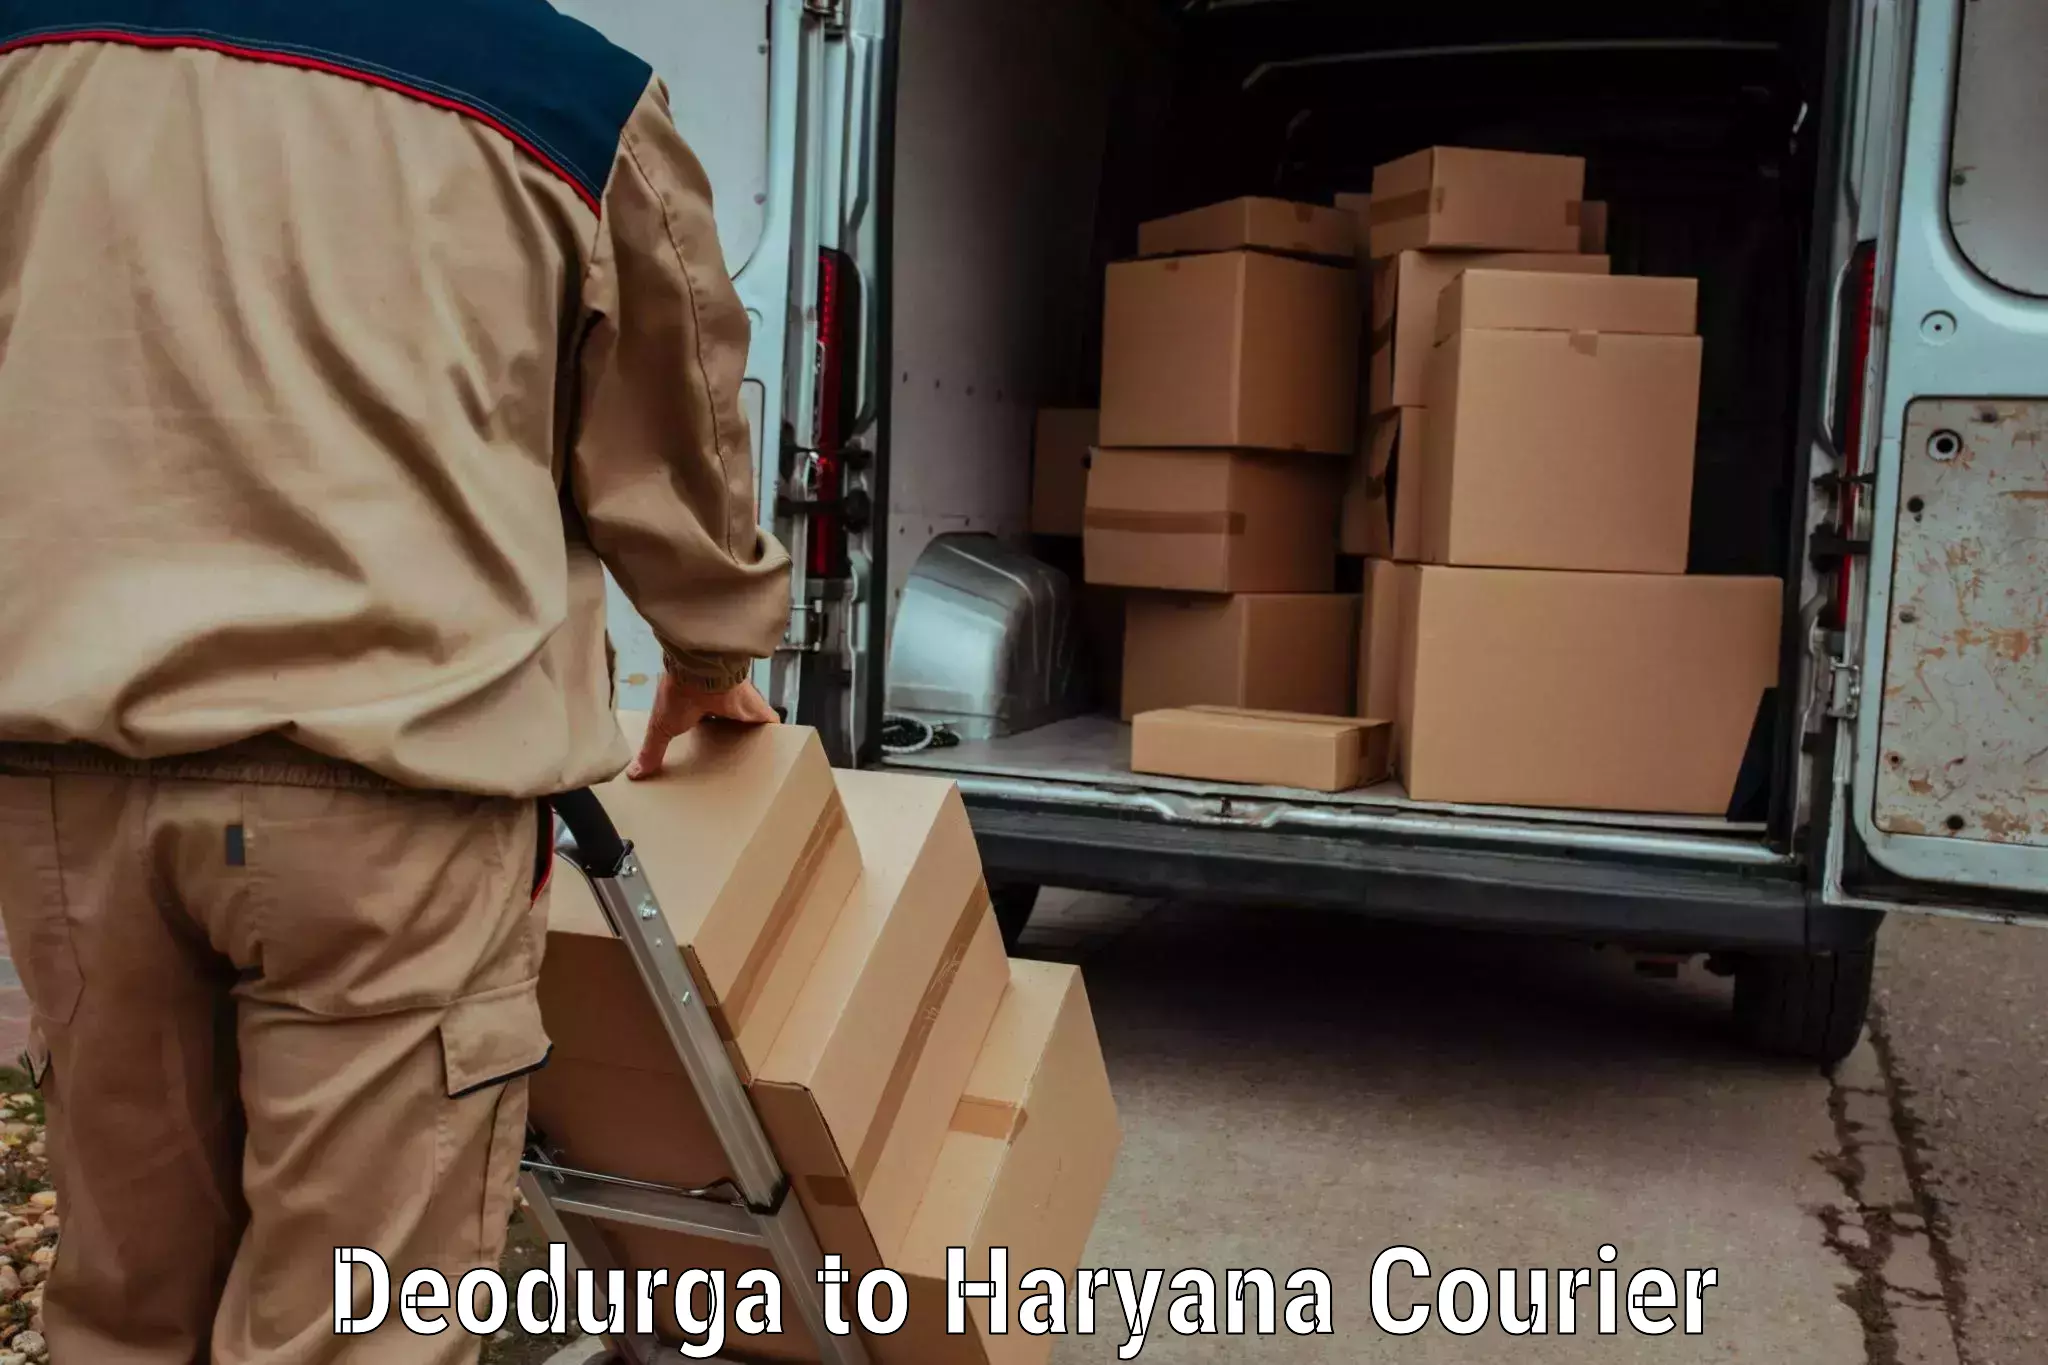 Ground shipping Deodurga to Sirsa